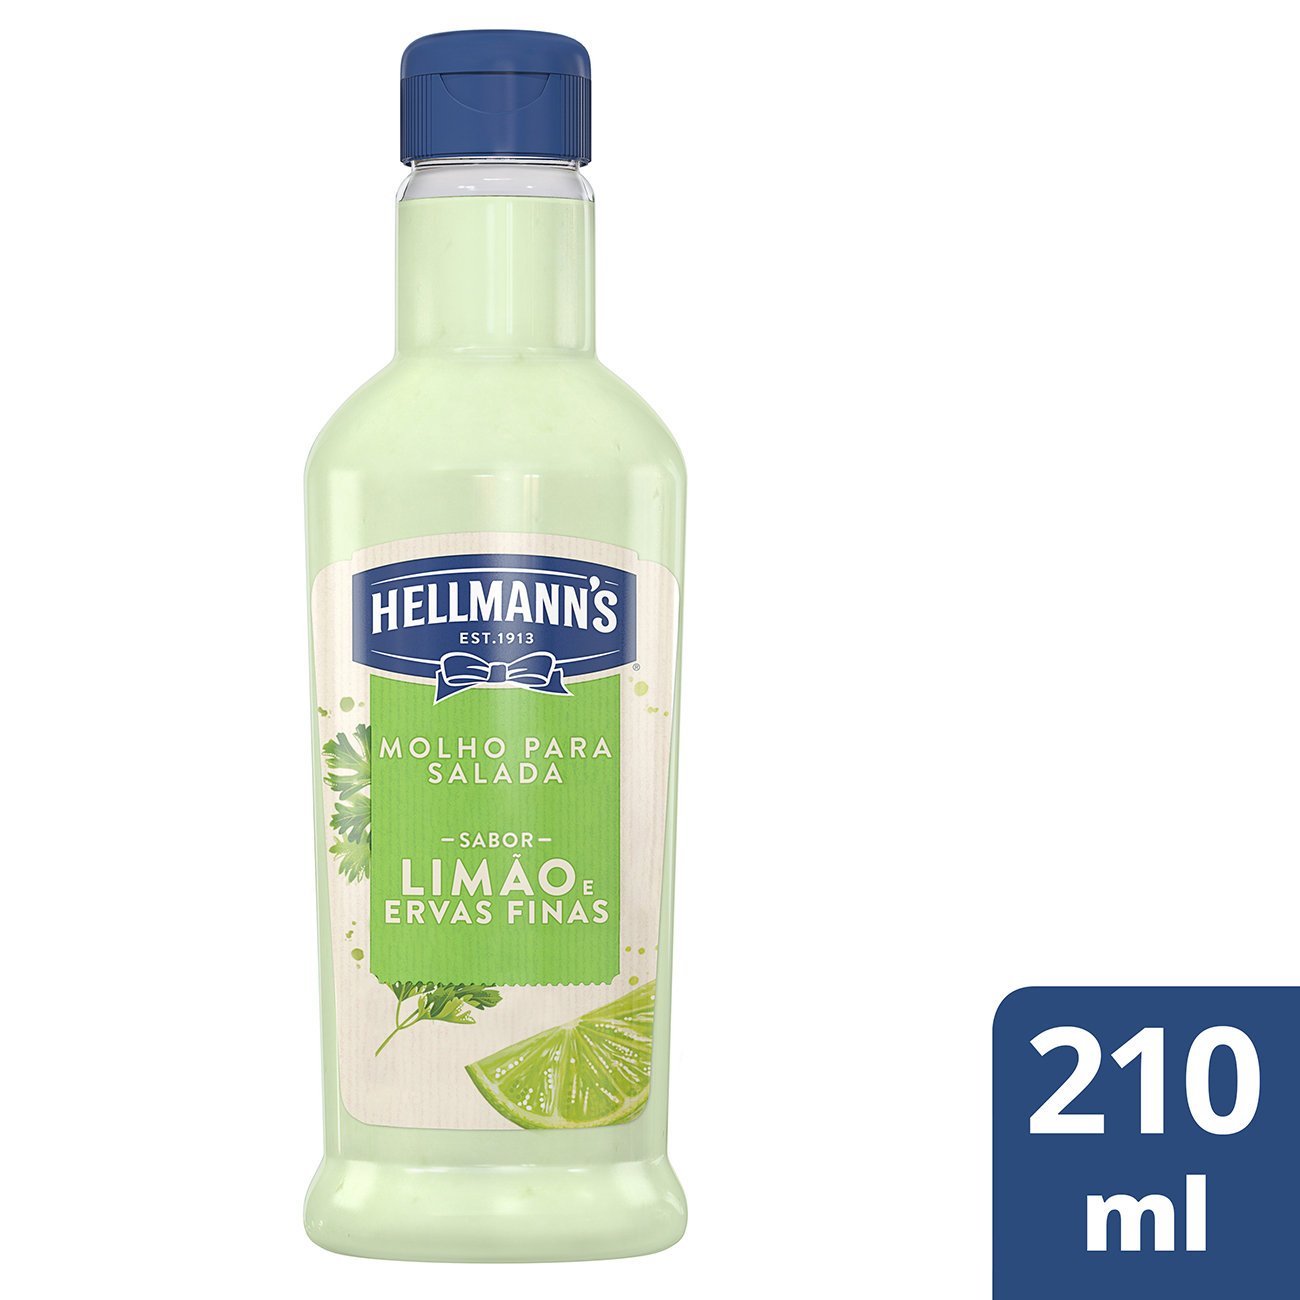 Molho para Salada Lim�o e Ervas Finas Hellmann's 210mL